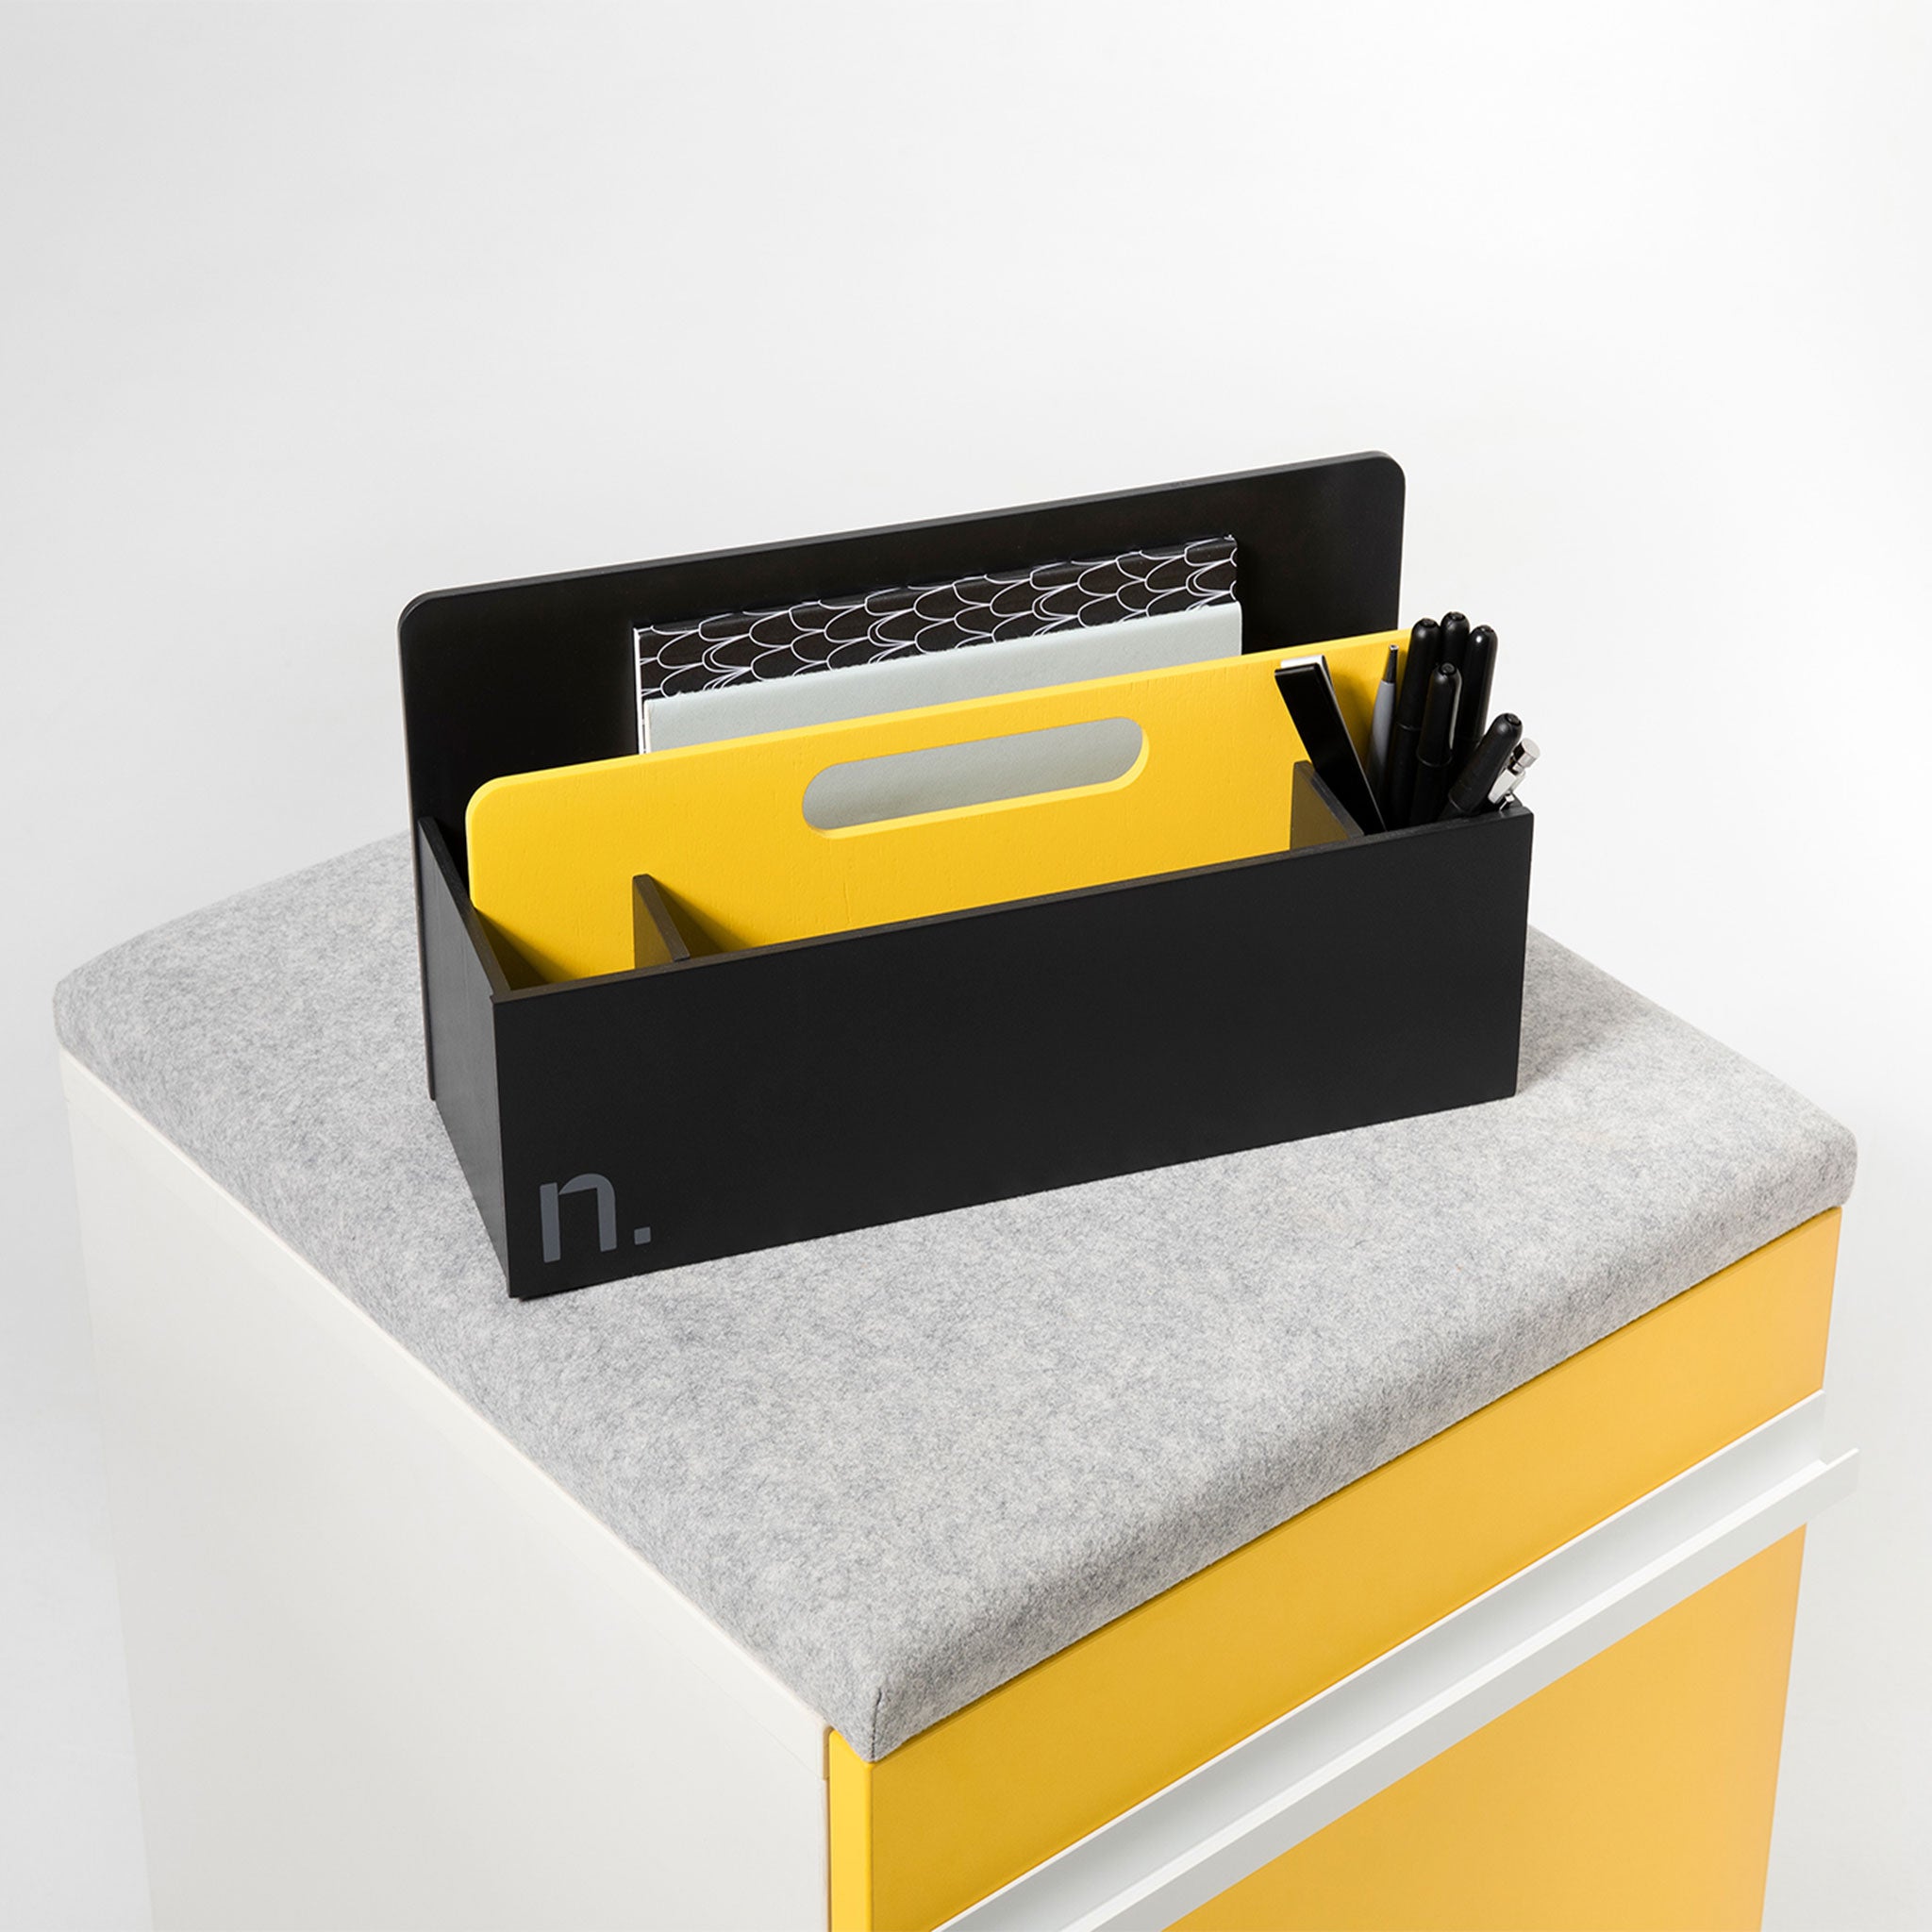 Eine gelbe Toolbox steht auf einem Rollcontainer mit gelber Front und grauem Sitzpolster. In den Fächern der Toolbox sind Stifte und Zettel verteilt.